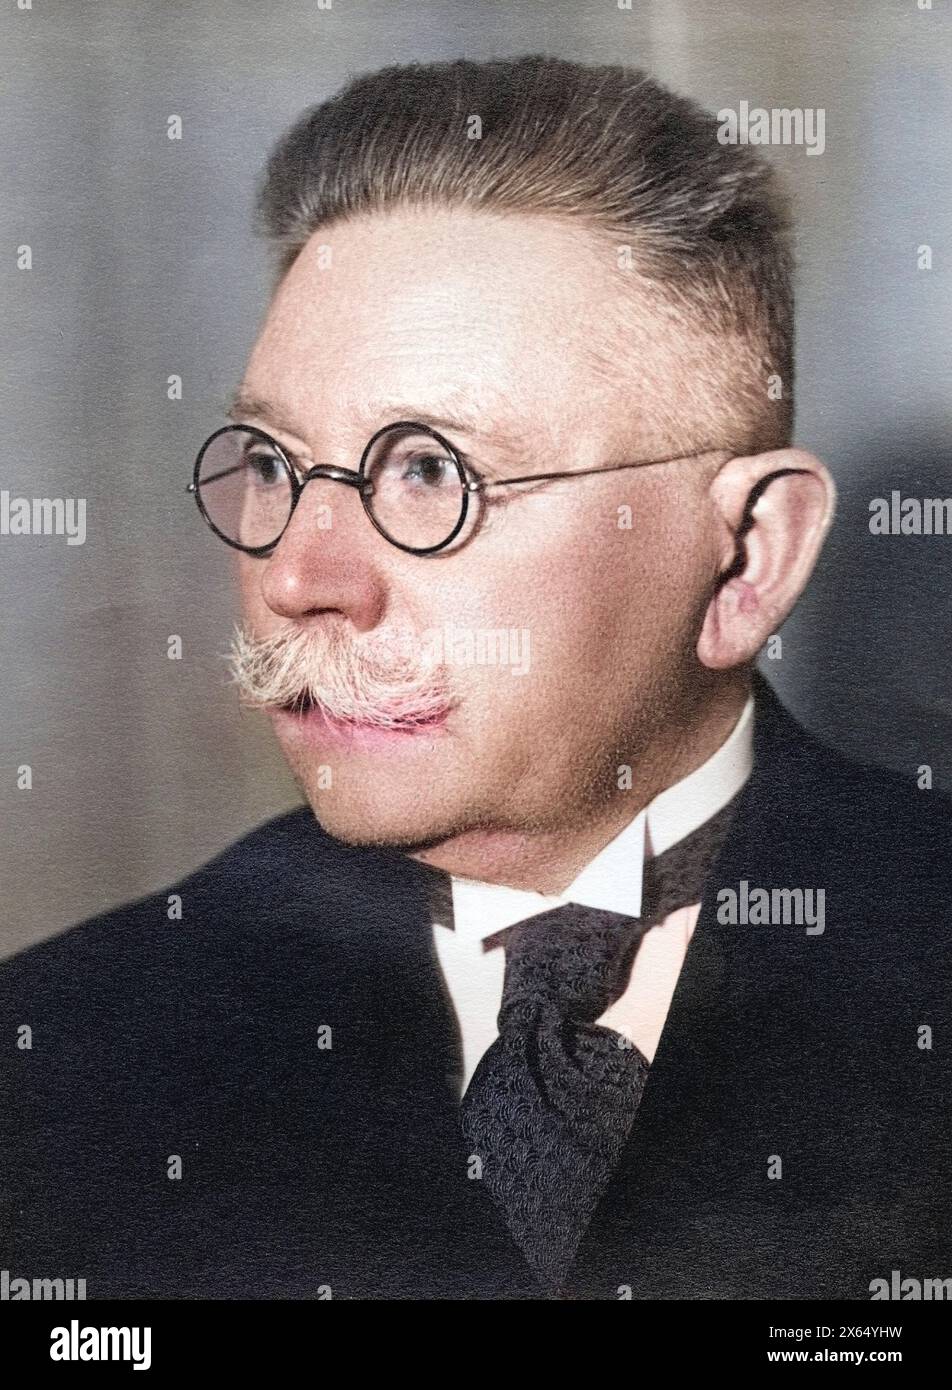 Hugenberg, Alfred, 19.6.1865 - 12.3,1951, éditeur et homme politique allemand (DNVP), portrait, photographie avec dévouement, USAGE ÉDITORIAL SEULEMENT Banque D'Images